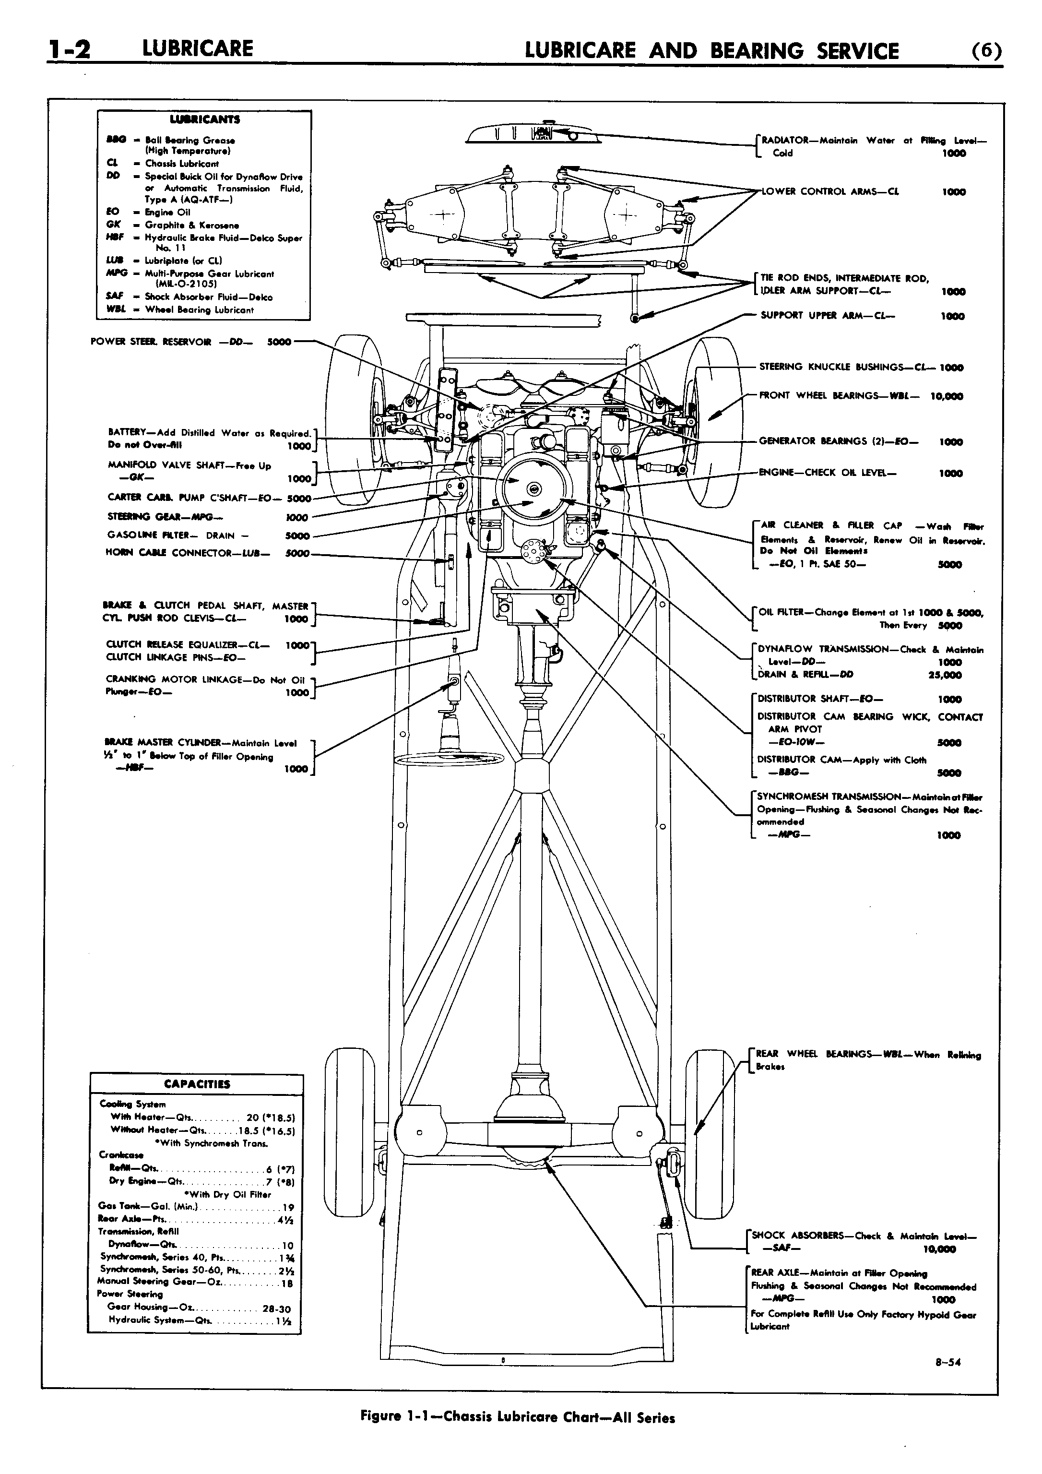 n_02 1955 Buick Shop Manual - Lubricare-002-002.jpg